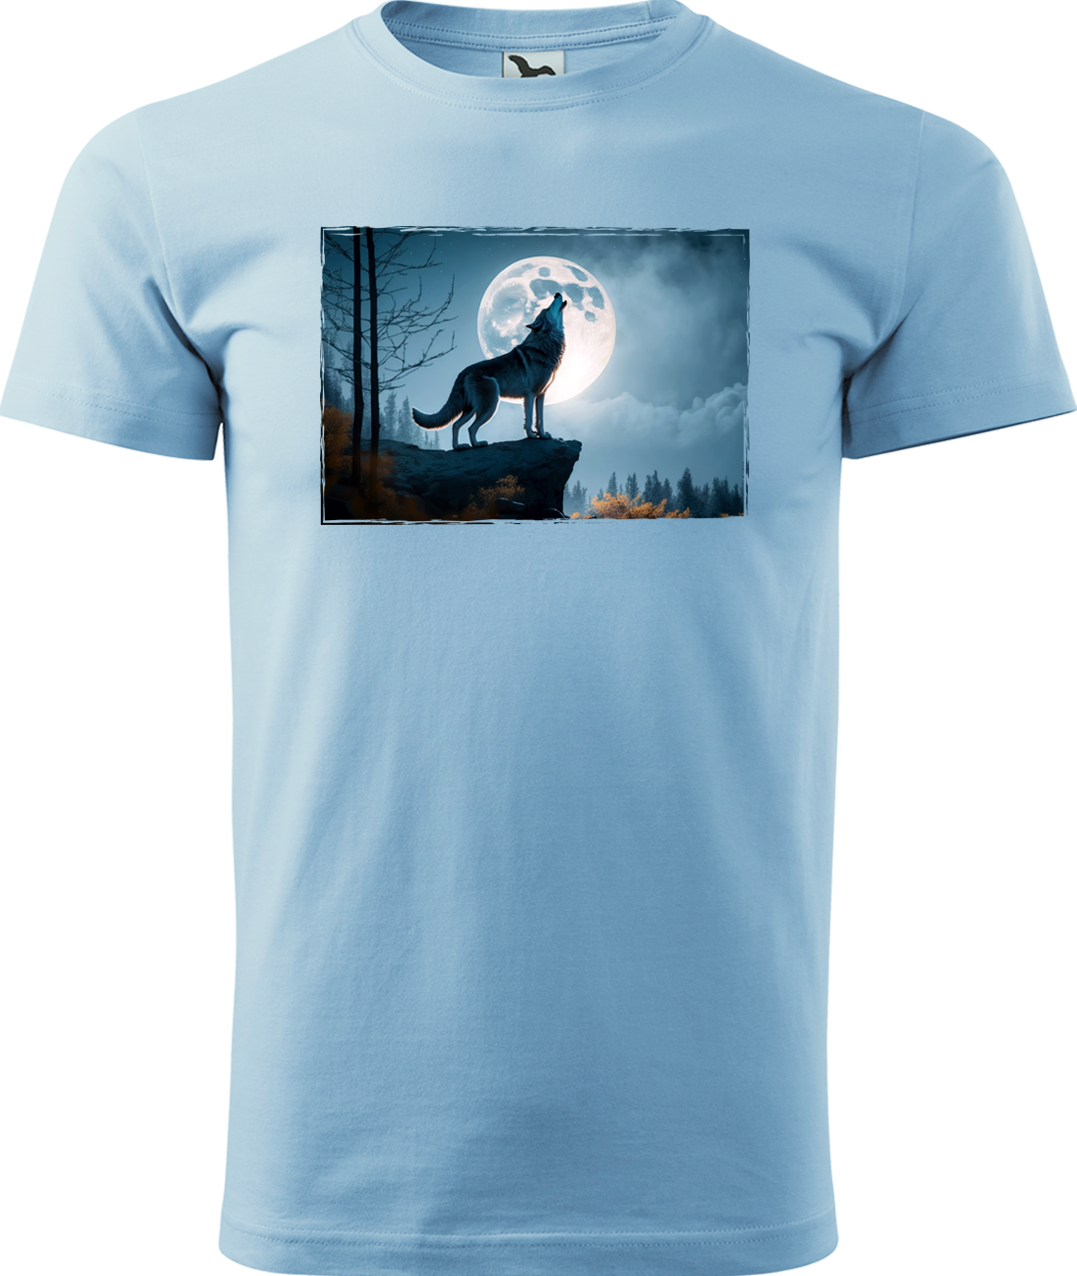 Pánské tričko s vlkem - Vyjící vlk Velikost: XL, Barva: Nebesky modrá (15)